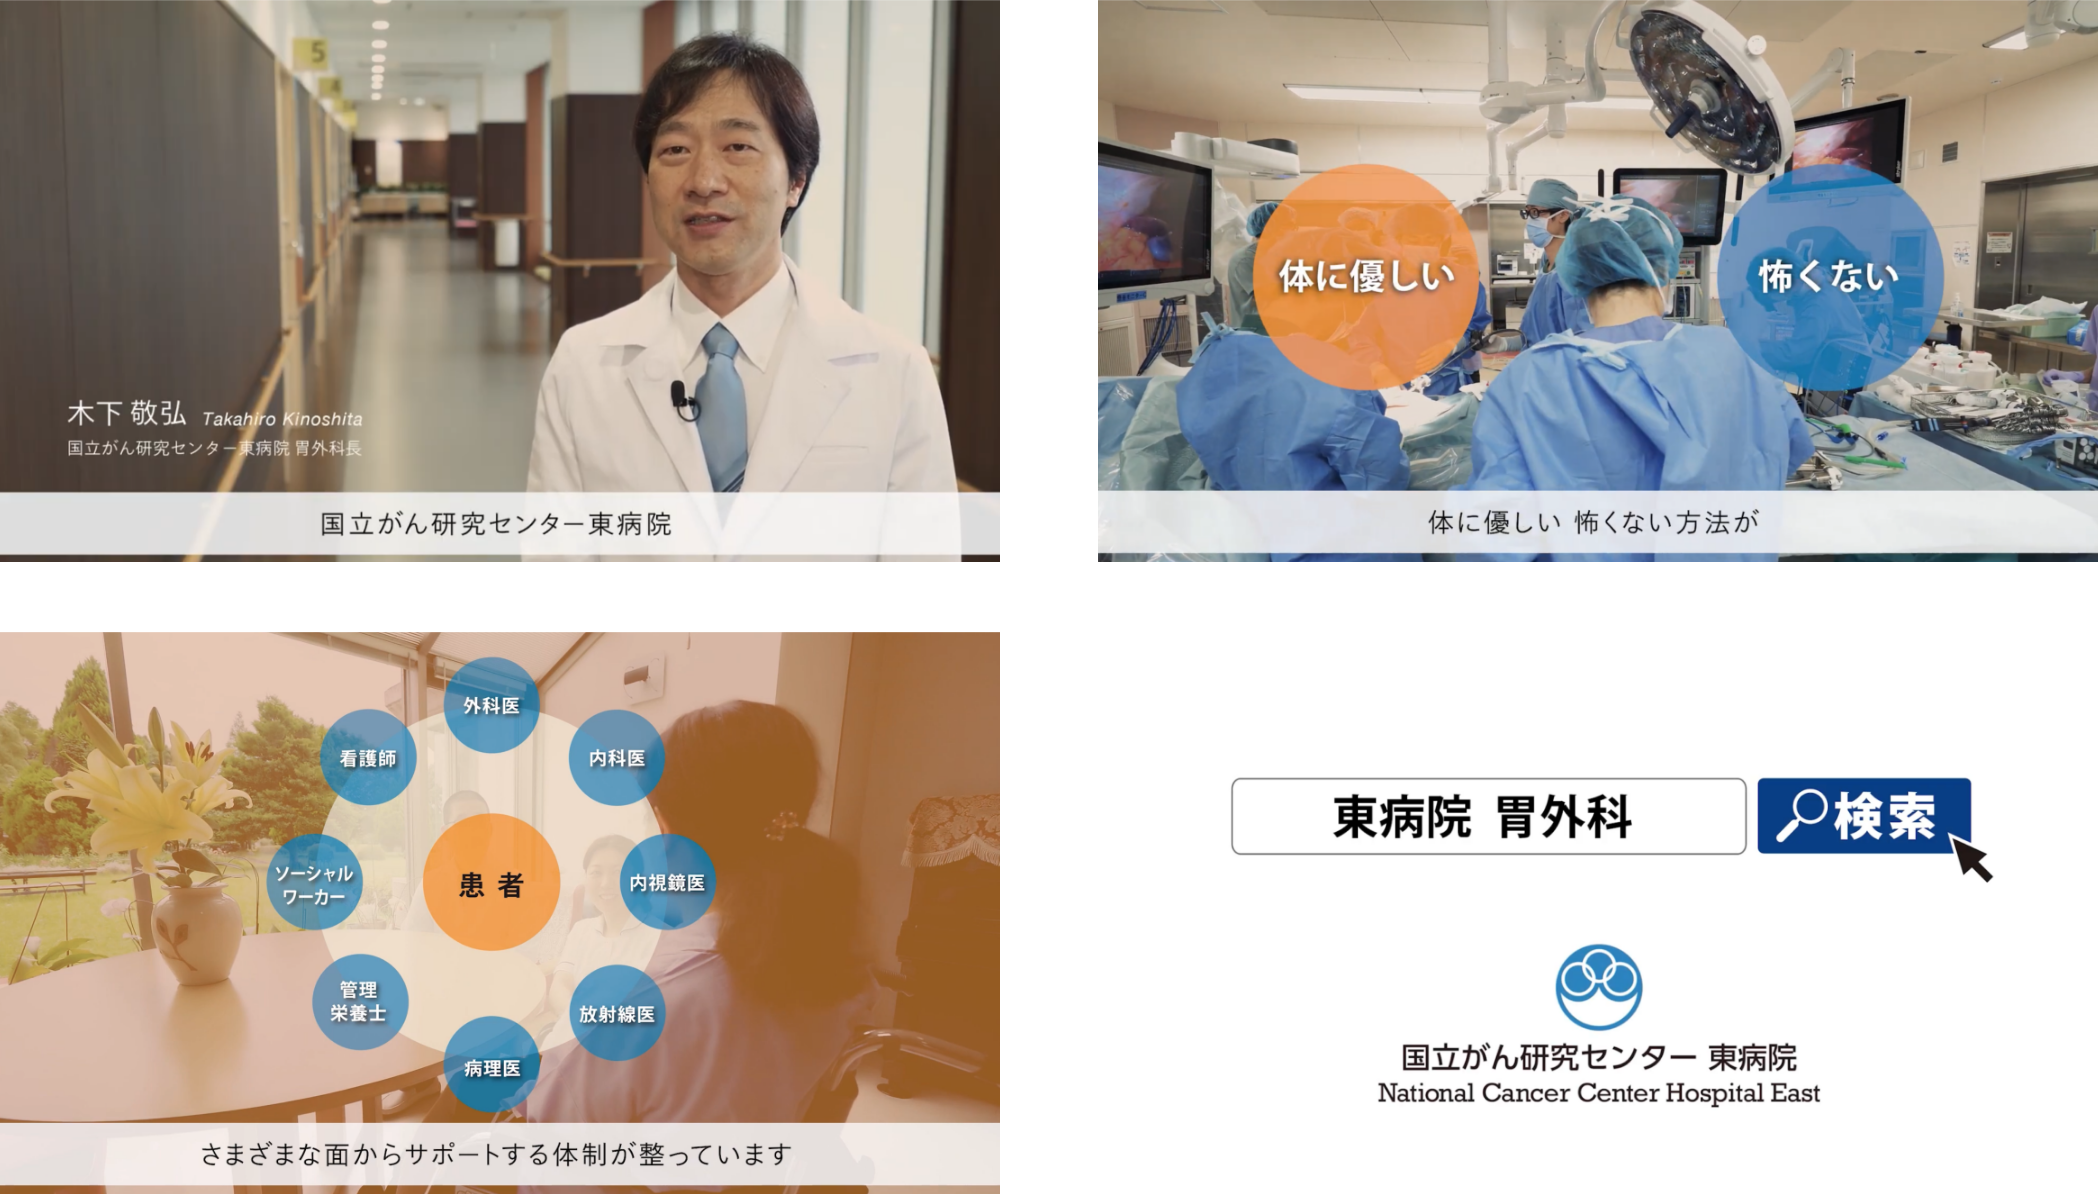 国立がん研究センター東病院 胃外科 プロモーションビデオ